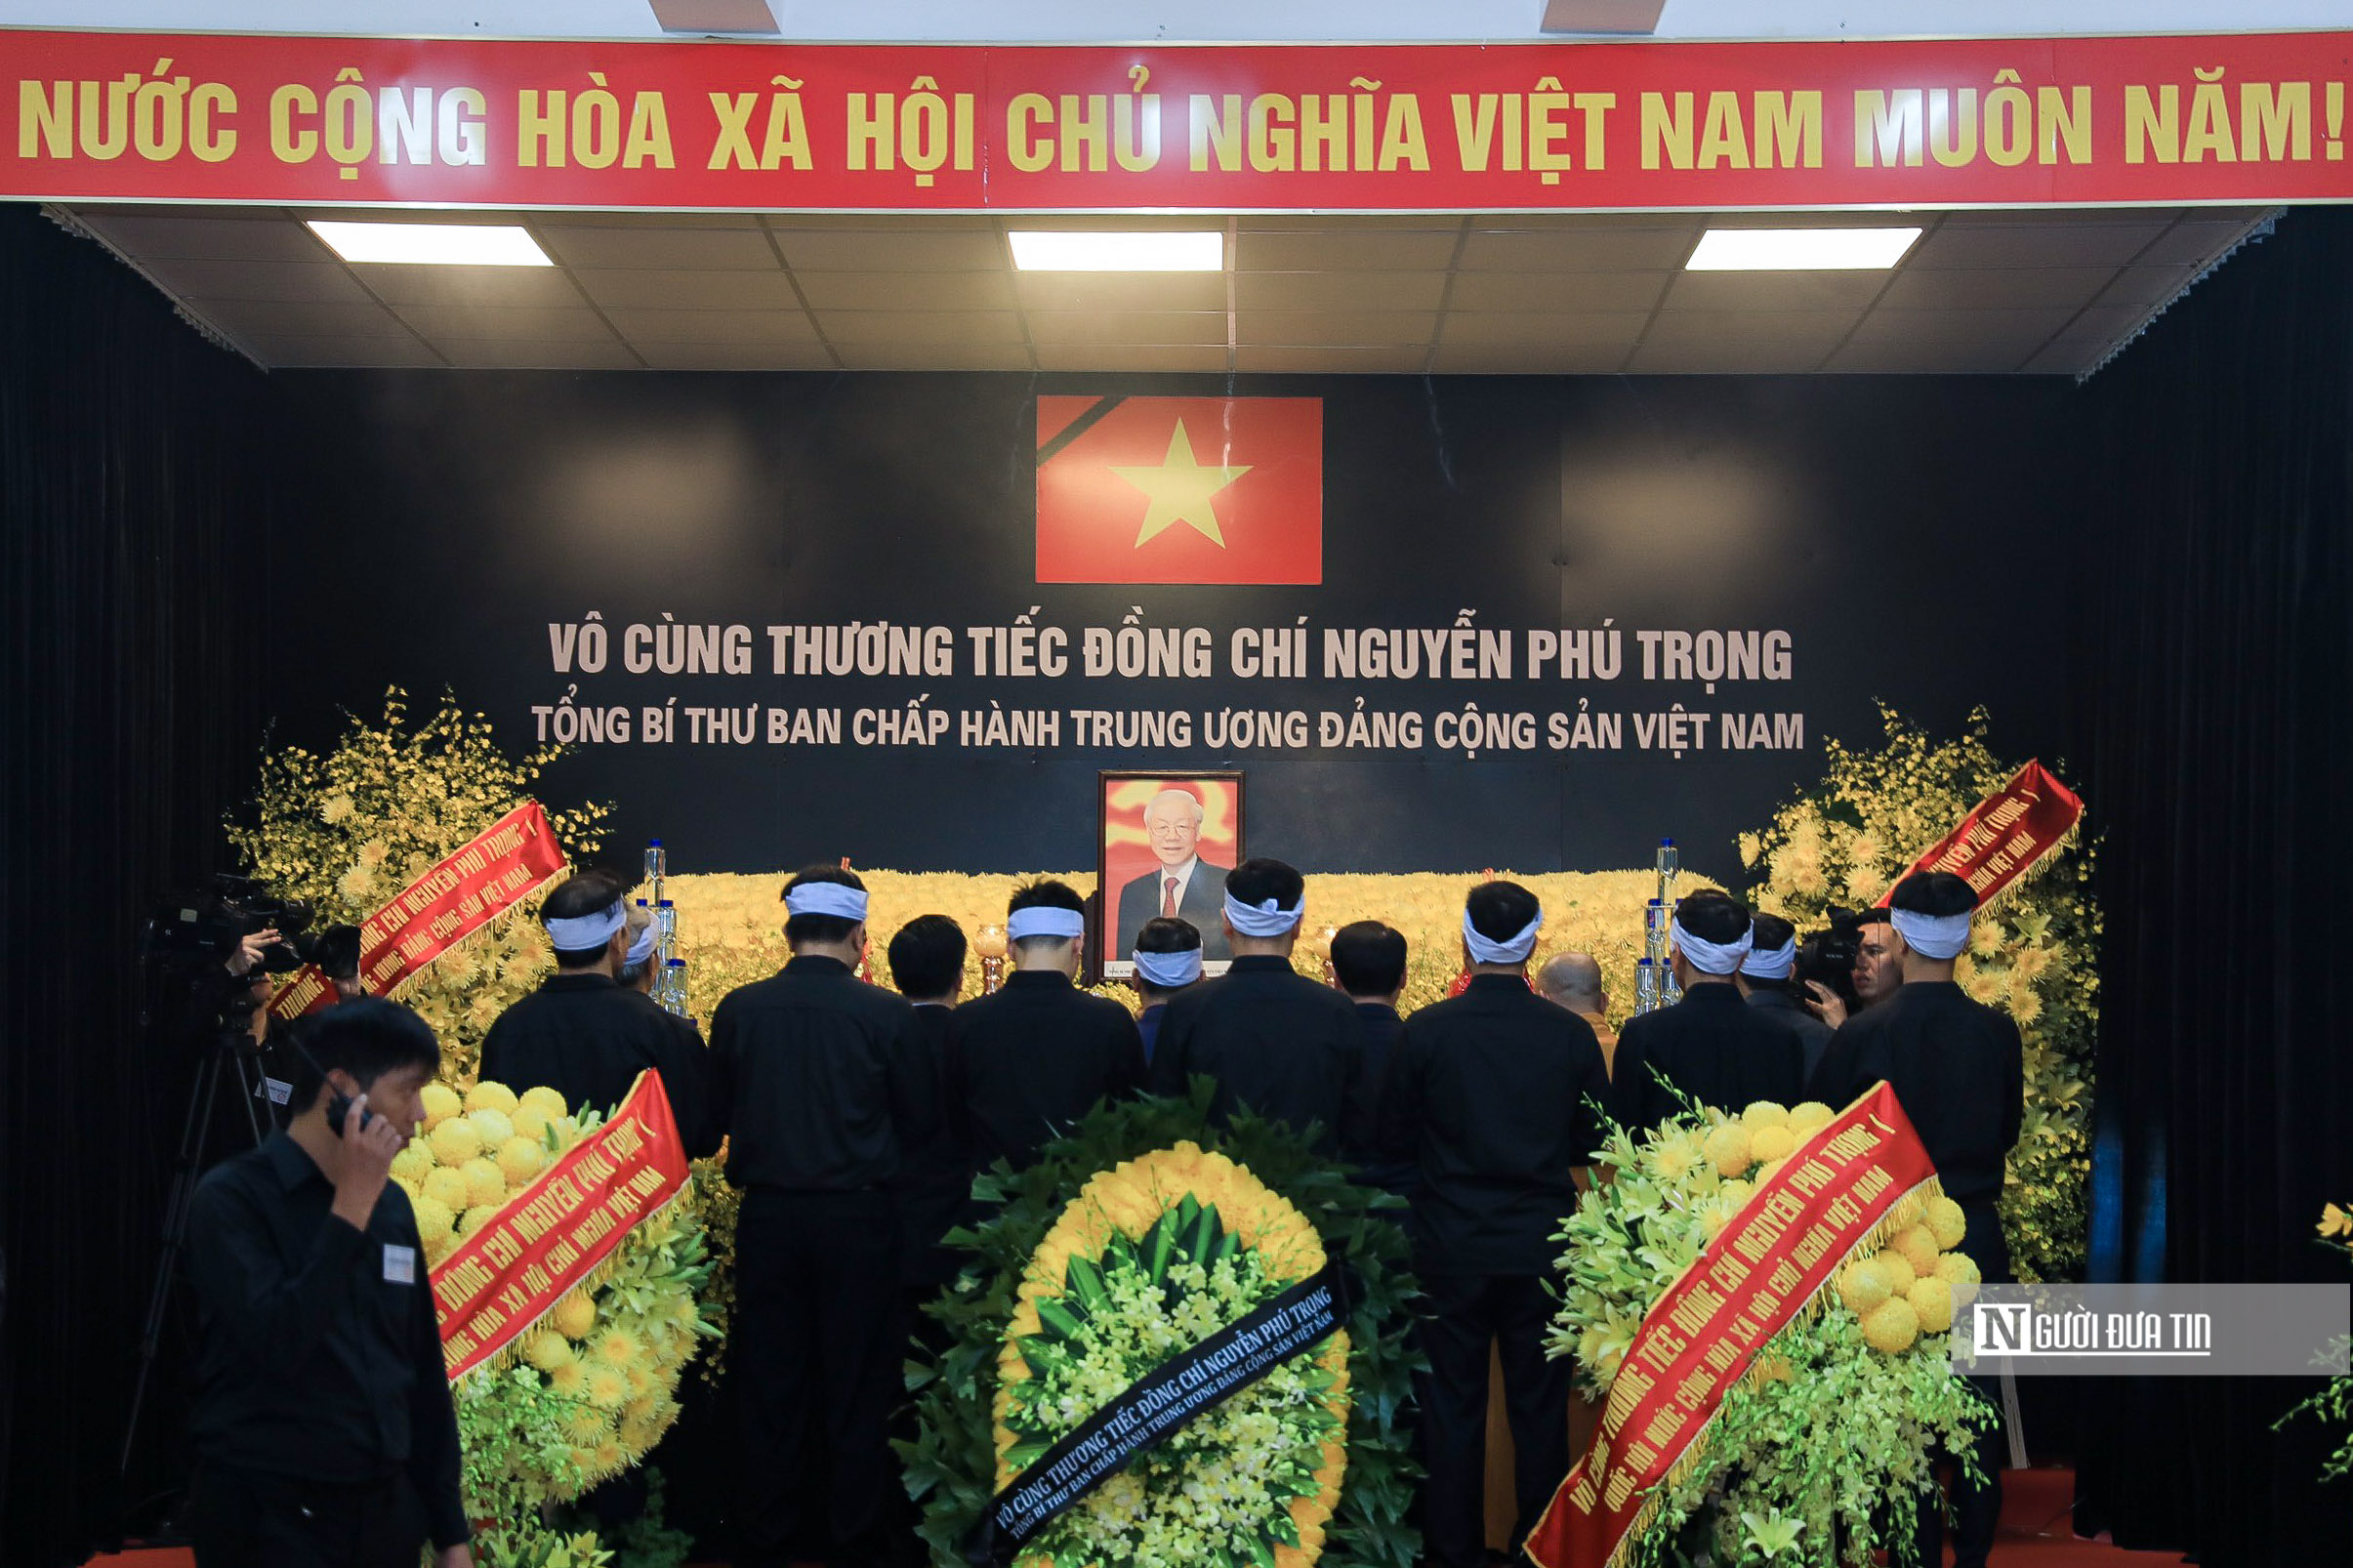 Hàng ngàn người tới viếng Tổng Bí thư Nguyễn Phú Trọng tại quê nhà- Ảnh 1.